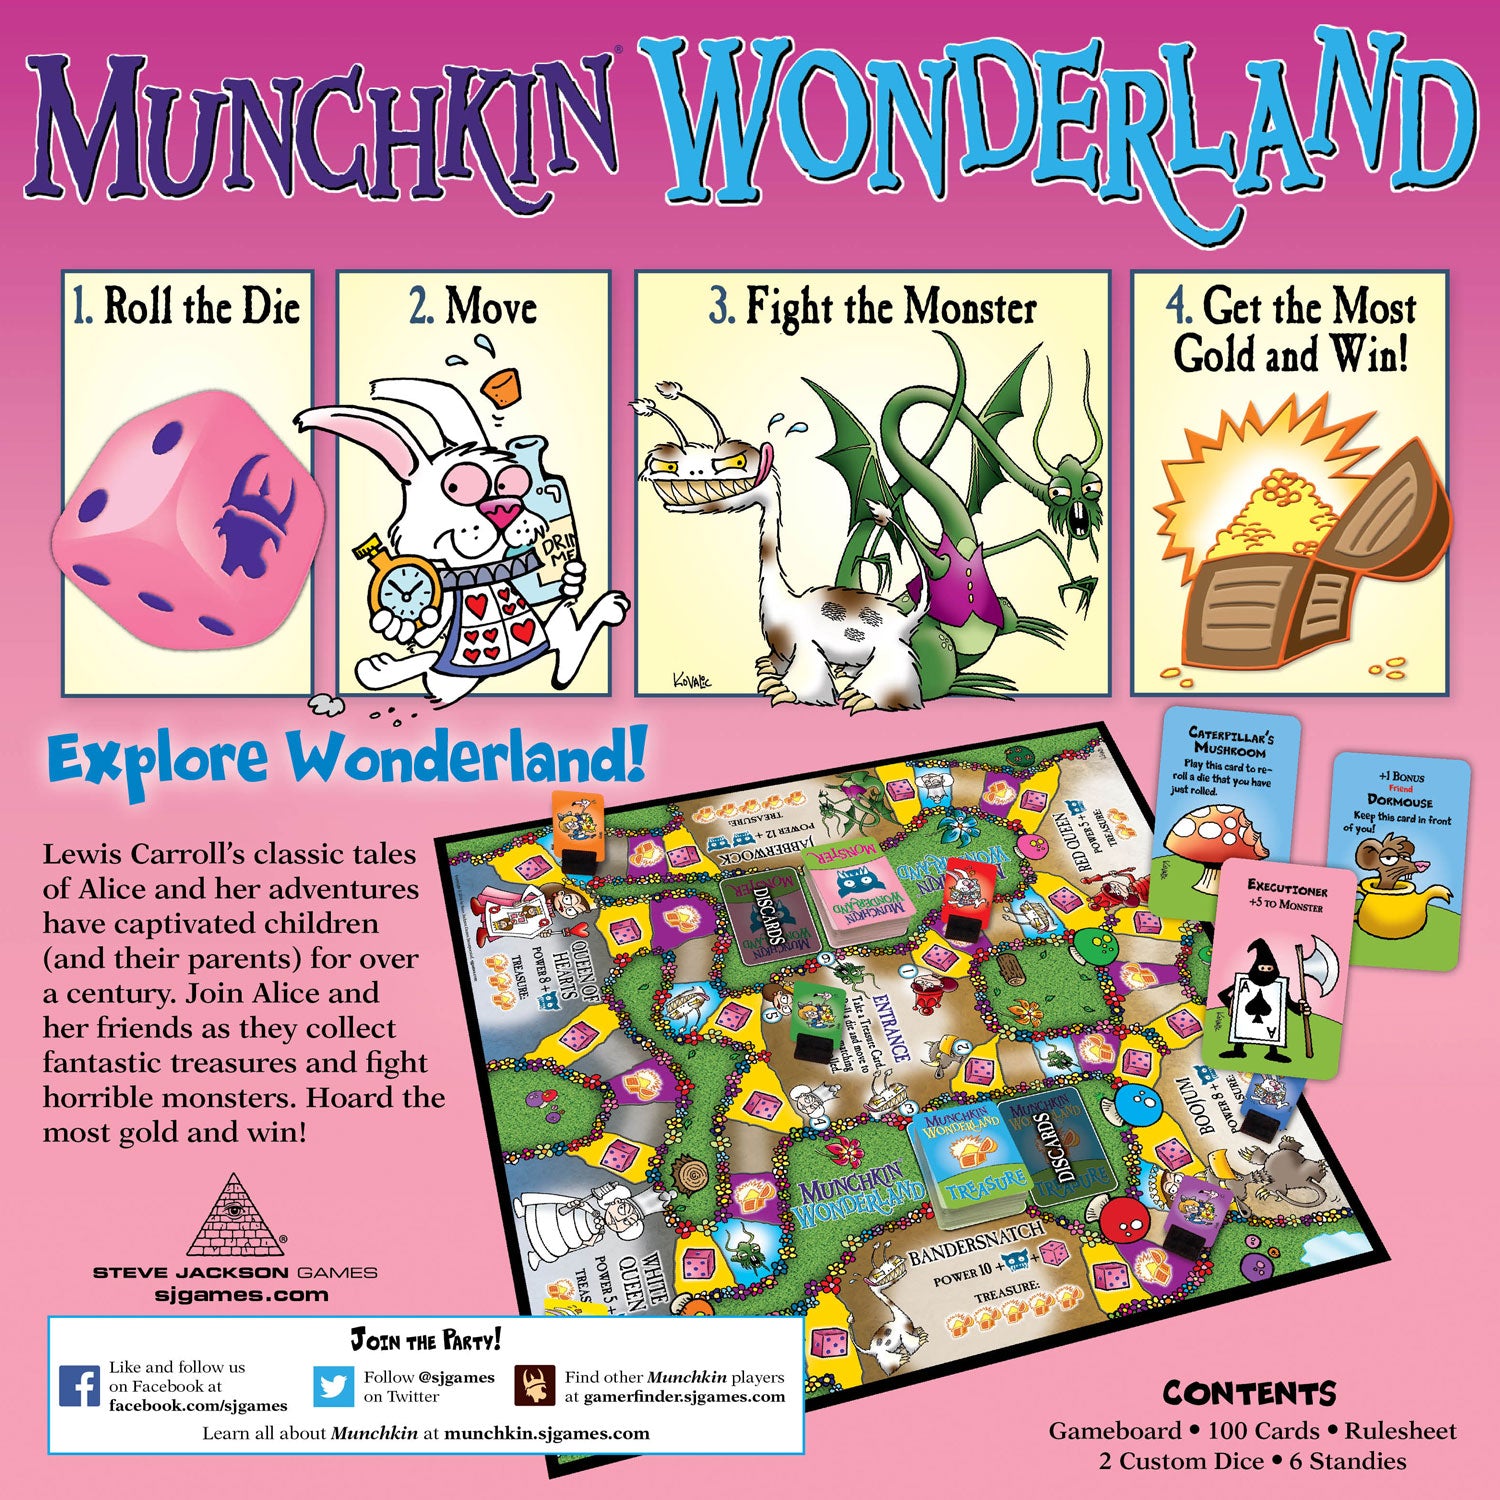 Munchkin Wonderland